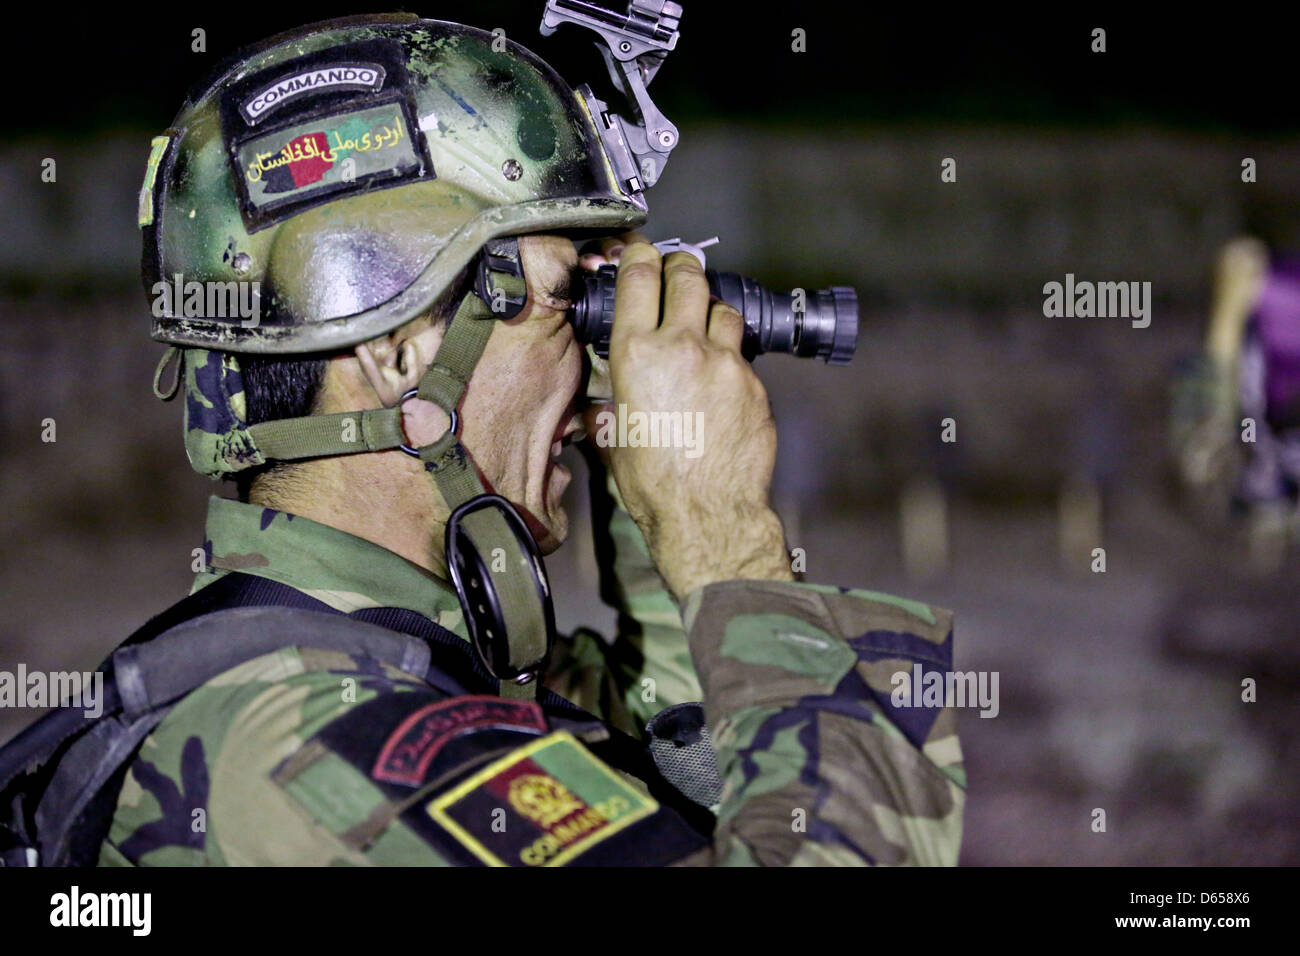 Las sorprendentes gafas de visión nocturna del ejército estadounidense -  Sport